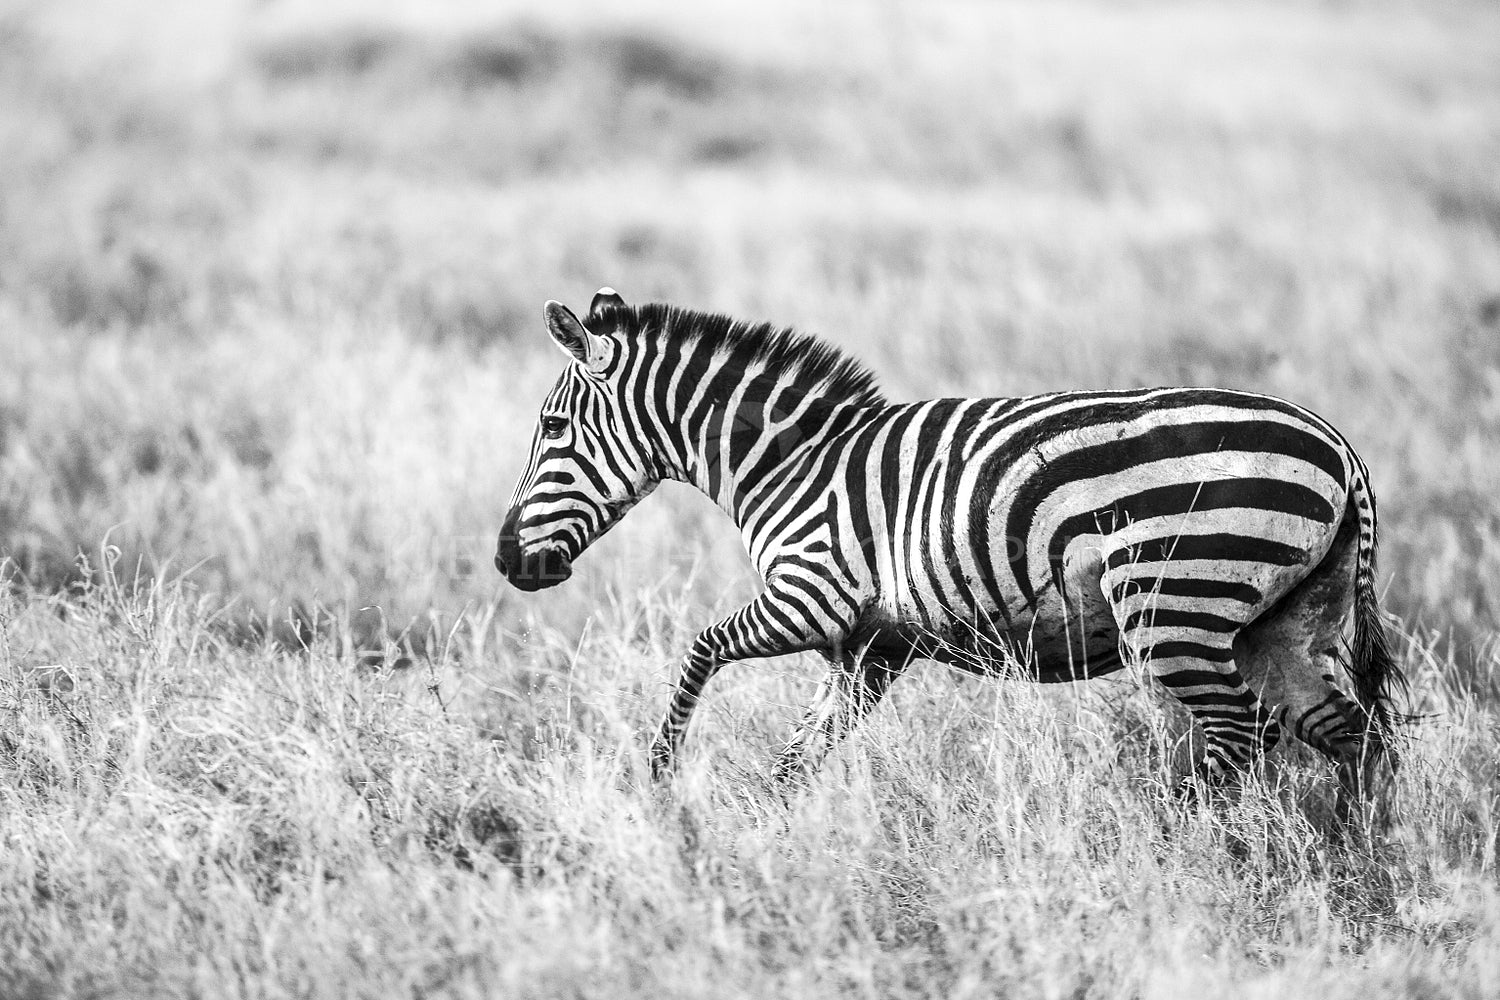 Running zebra at the great plains of Serengeti